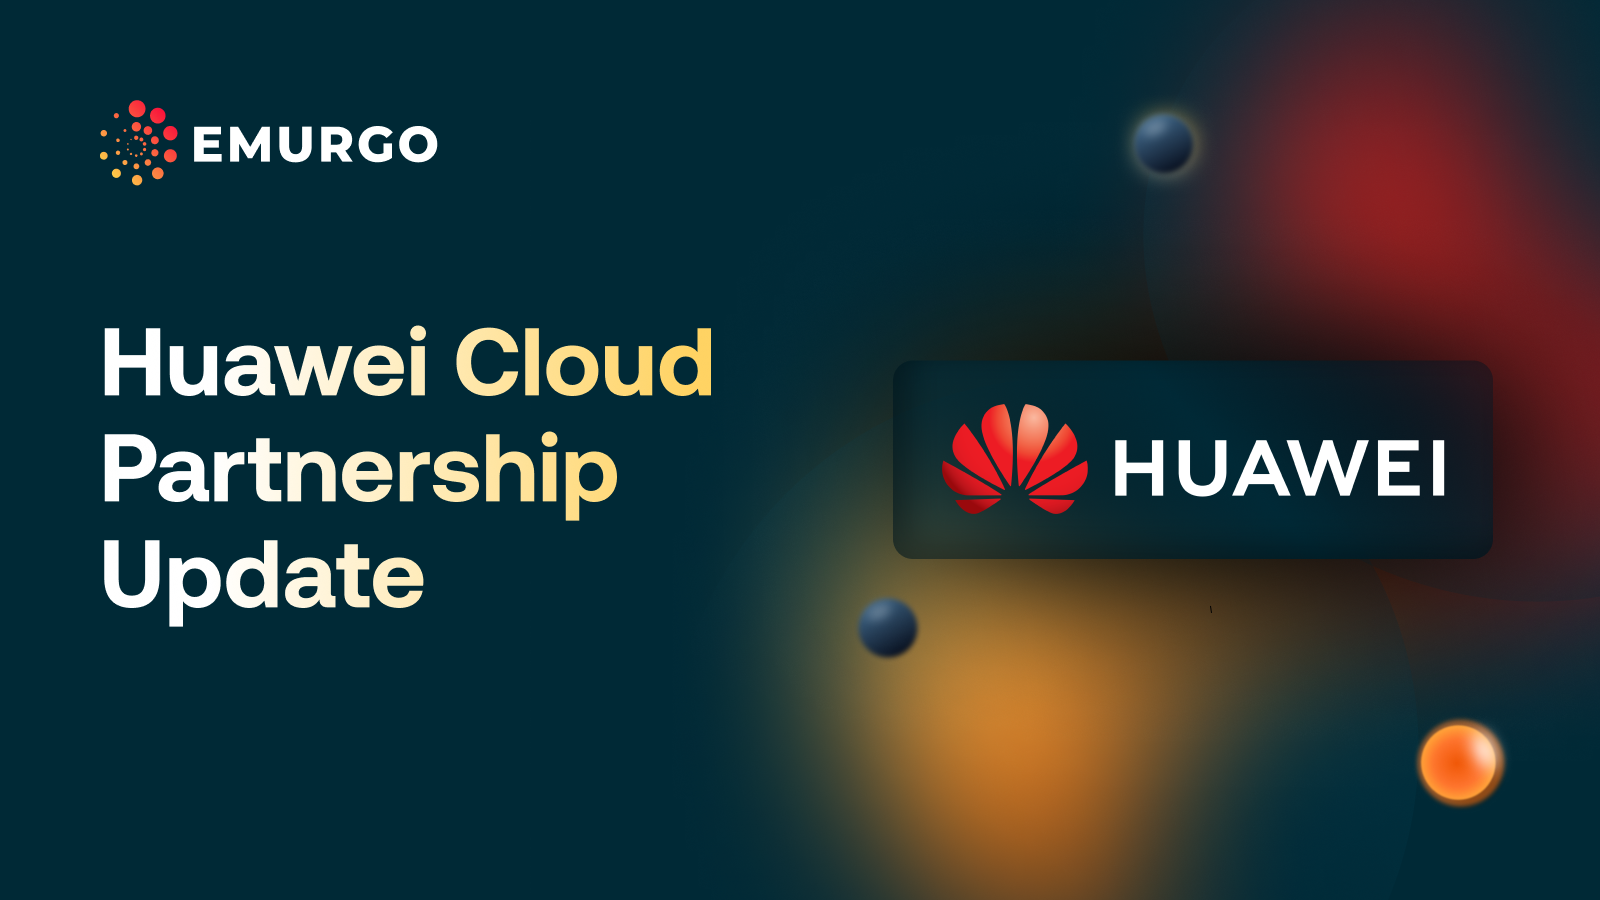 EMURGO and Huawei Cloud Partnership Update